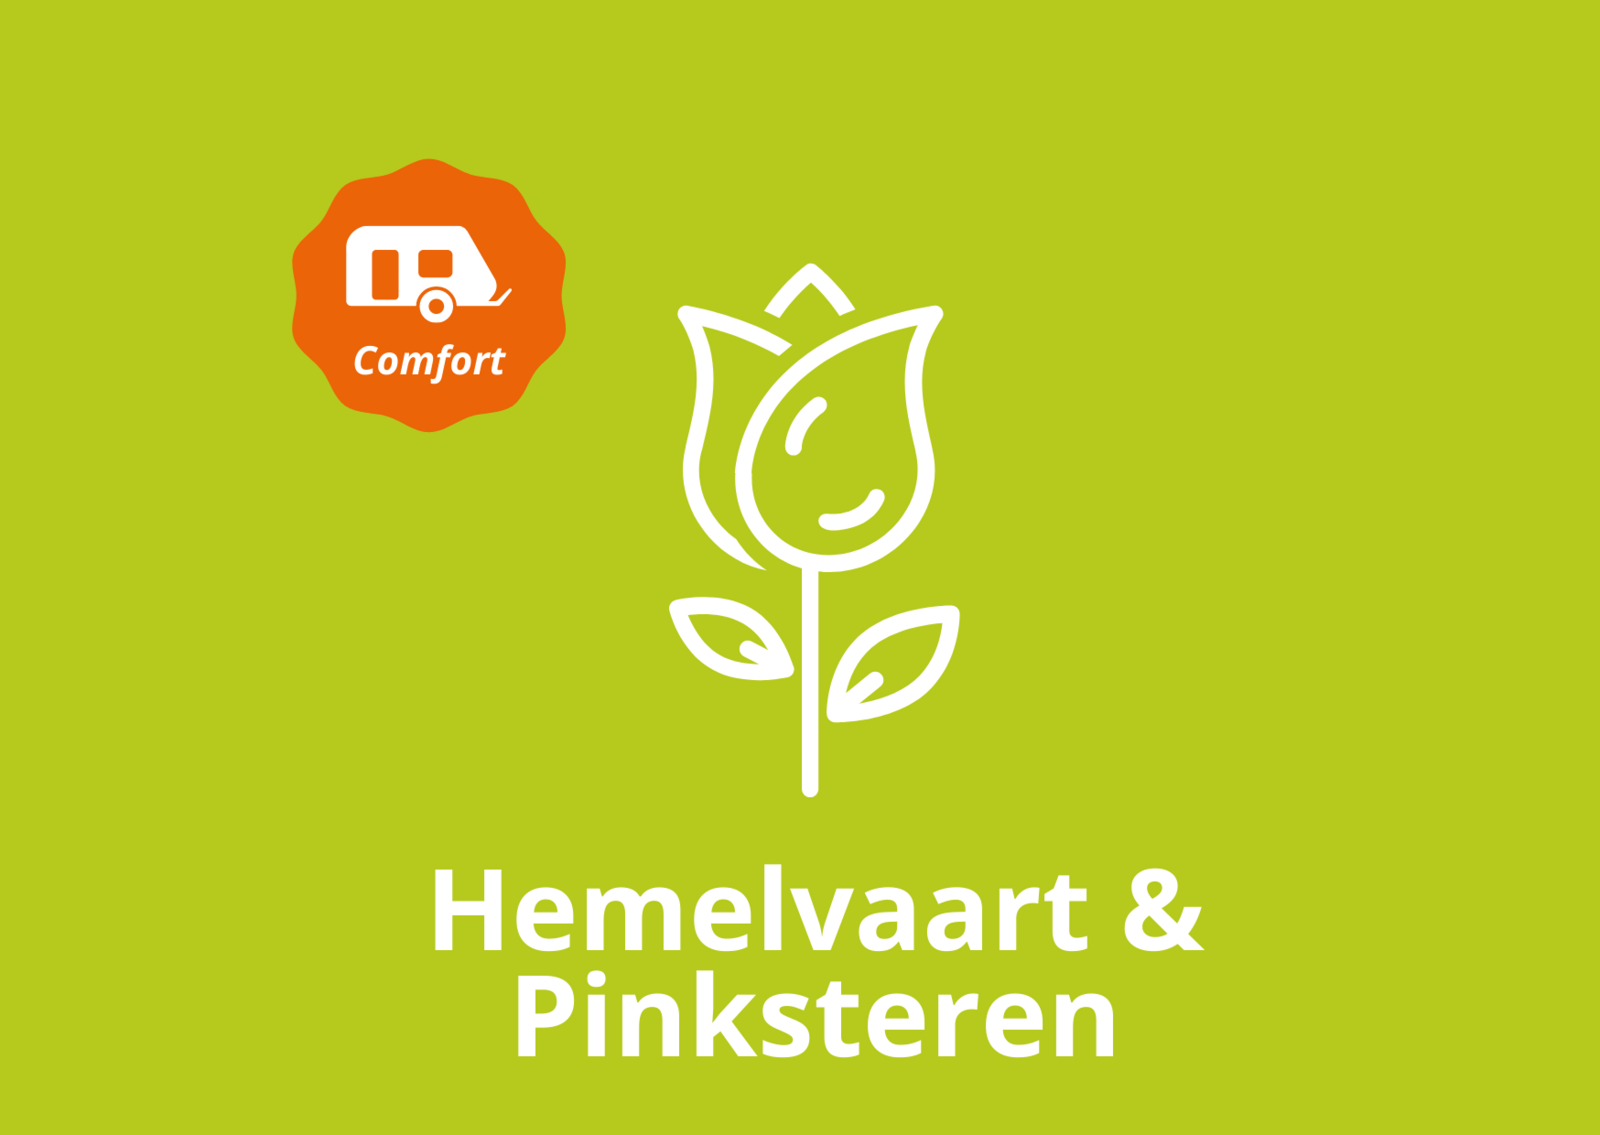 Hemelvaart & Pinksteren - comfort kampeerplaats